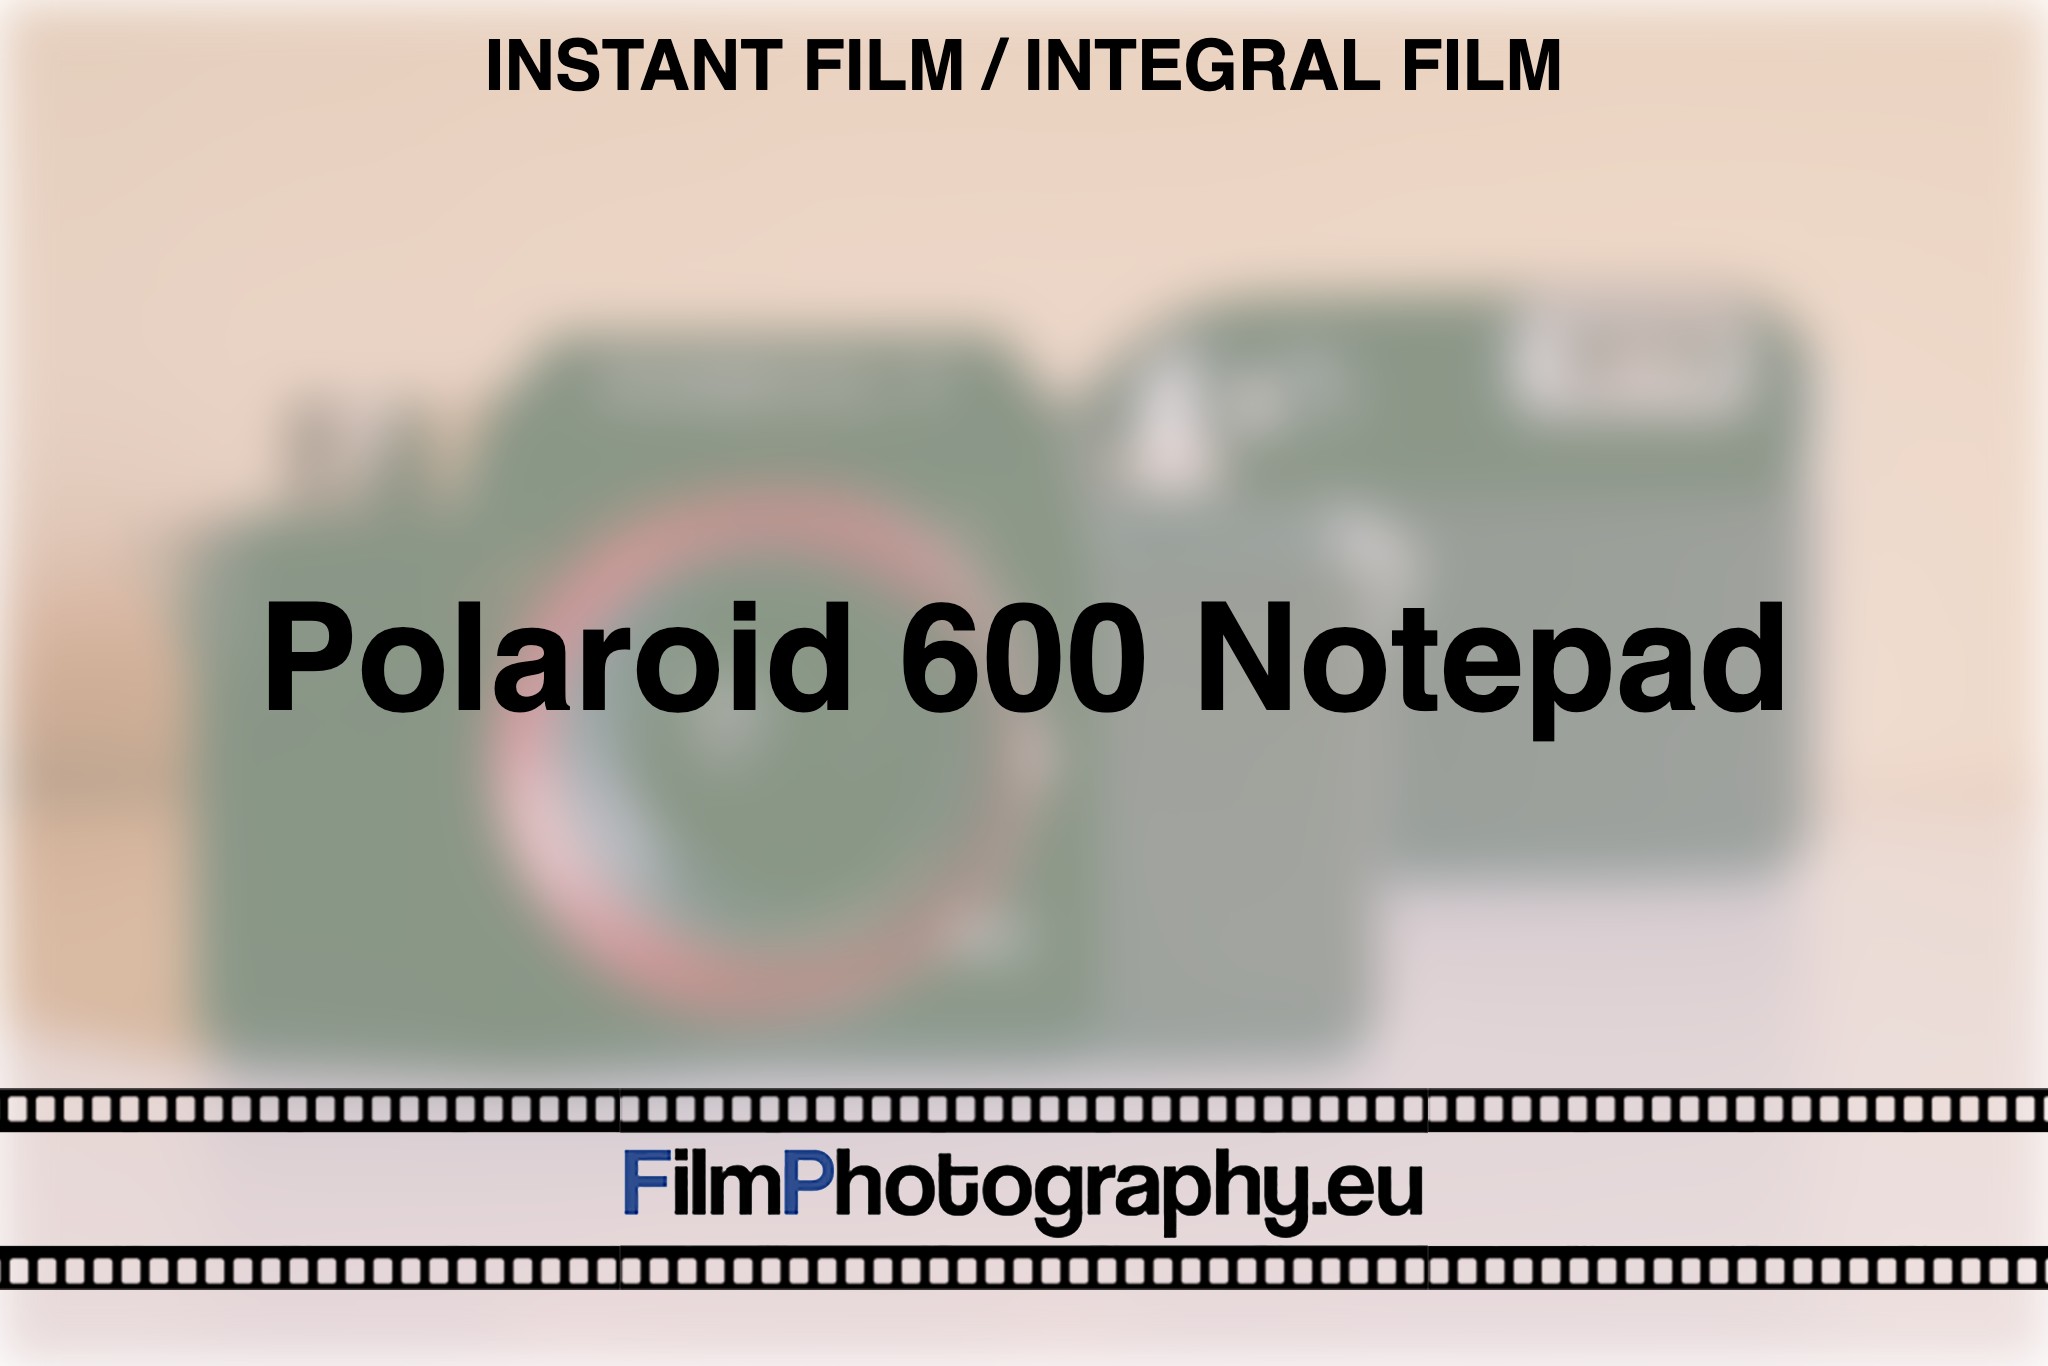 polaroid-600-notepad-instant-film-integral-film-bnv